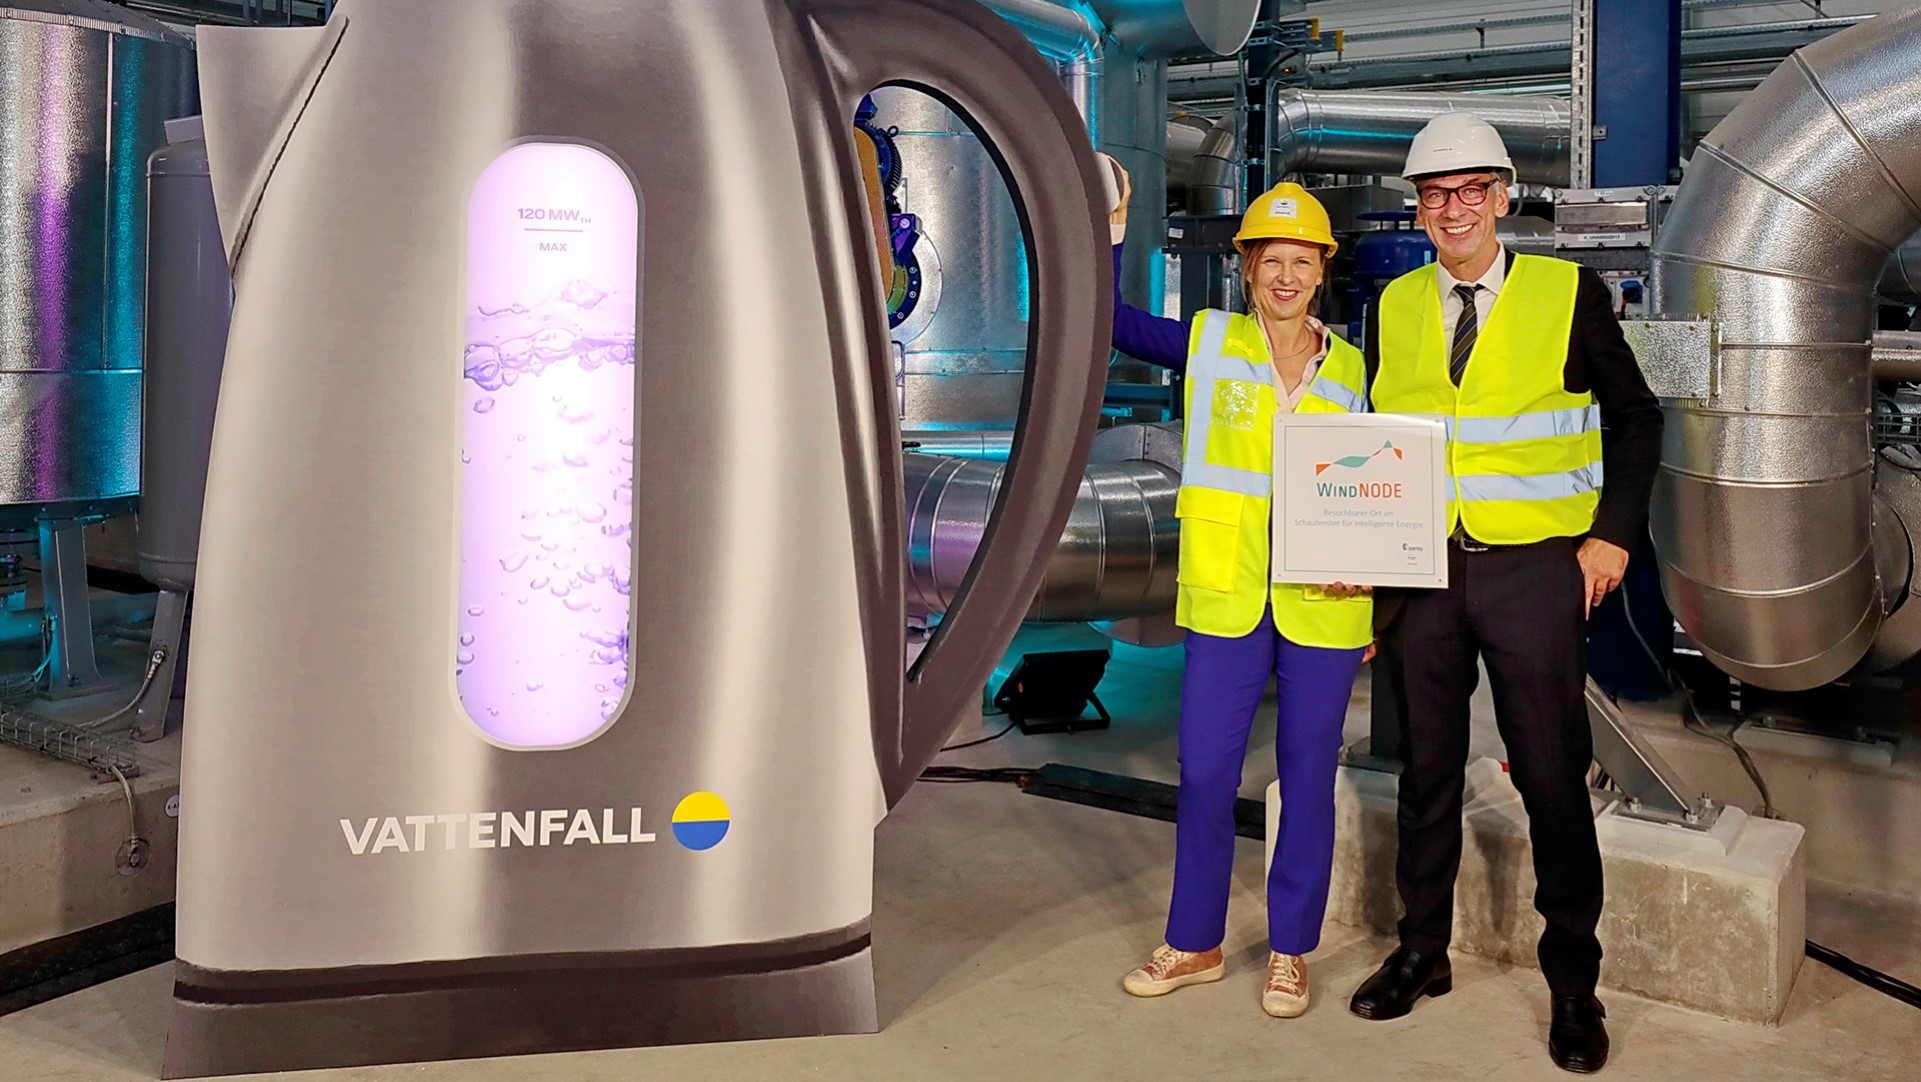 Inbetriebnahme Power-to-heat Anlage in Berlin  - zwei Personen vor einem riesigem symbolisierten Wasserkocher